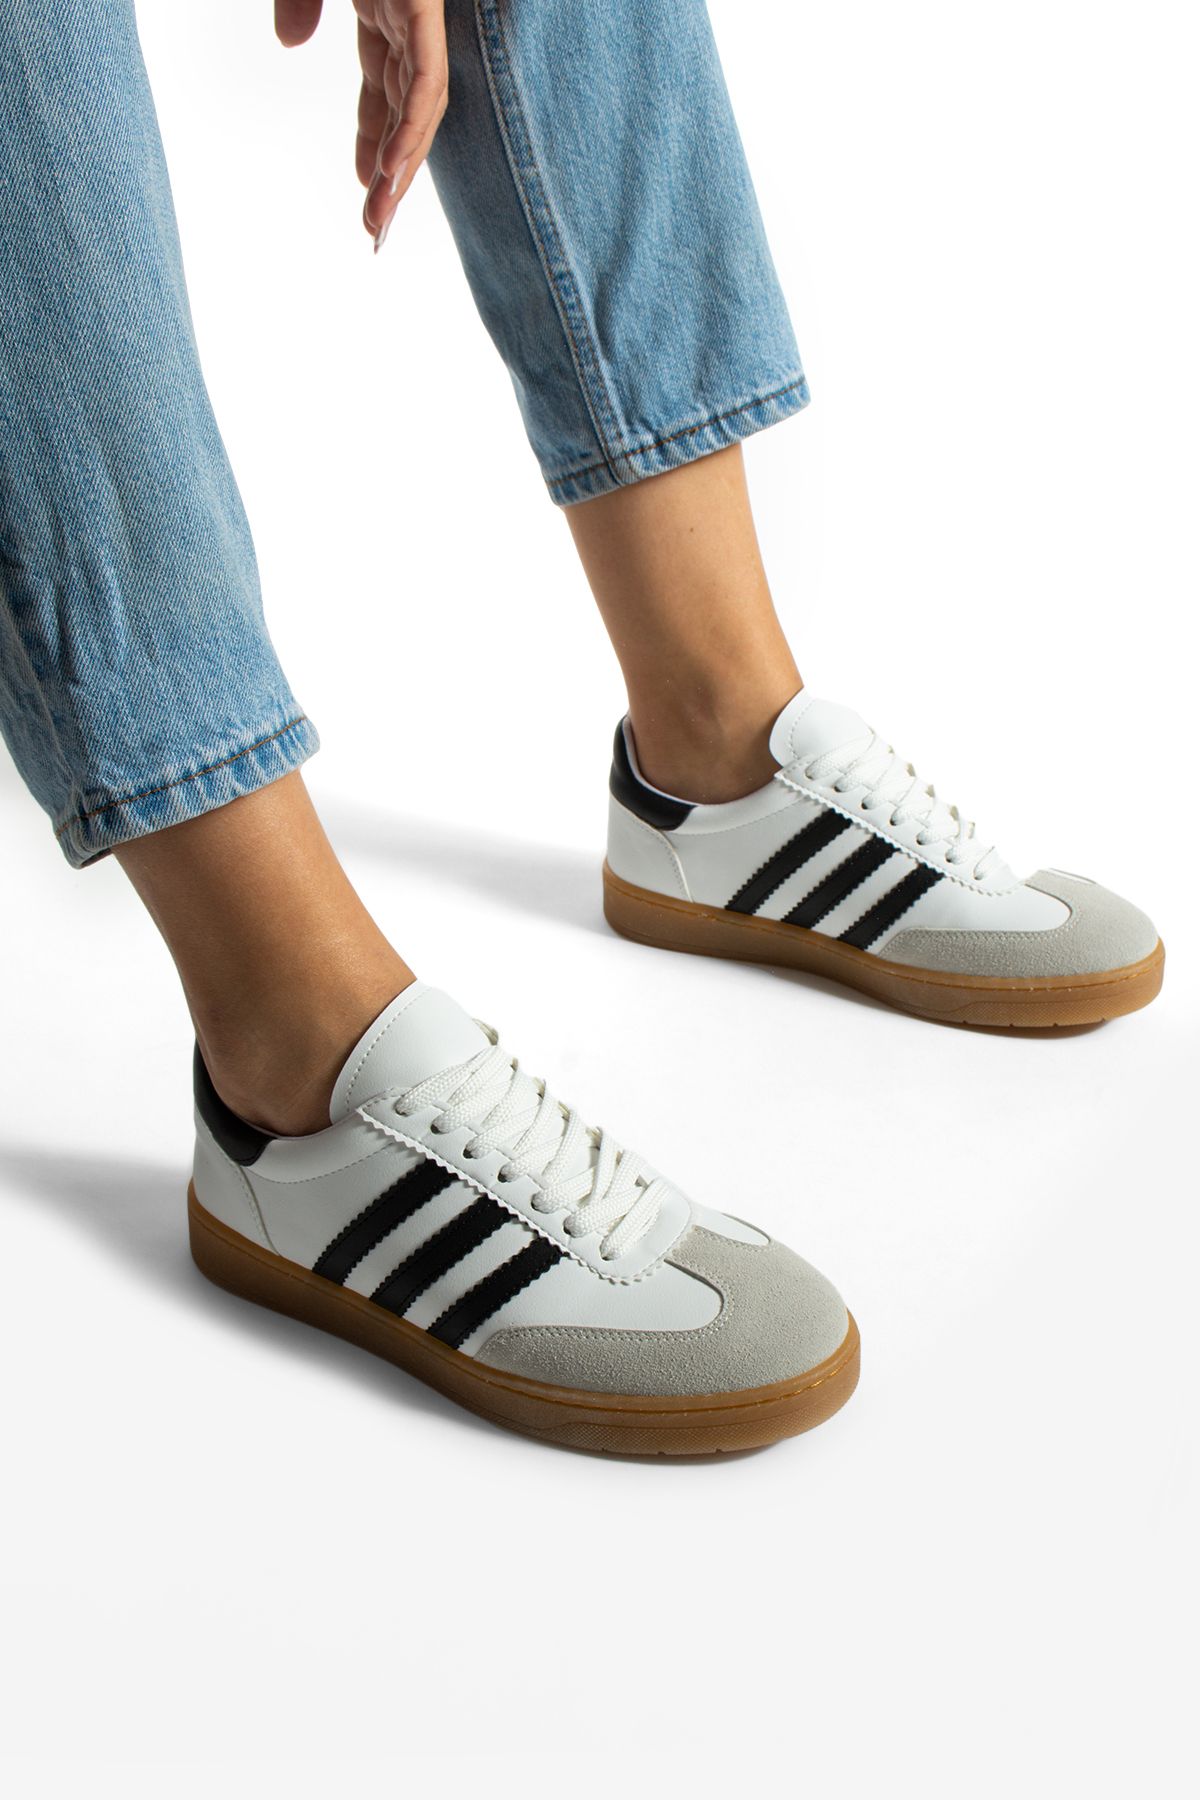 KOTAN Beyaz-Siyah Kadın Kontrast Parçalı Spor Ayakkabı Kadın Sneakers